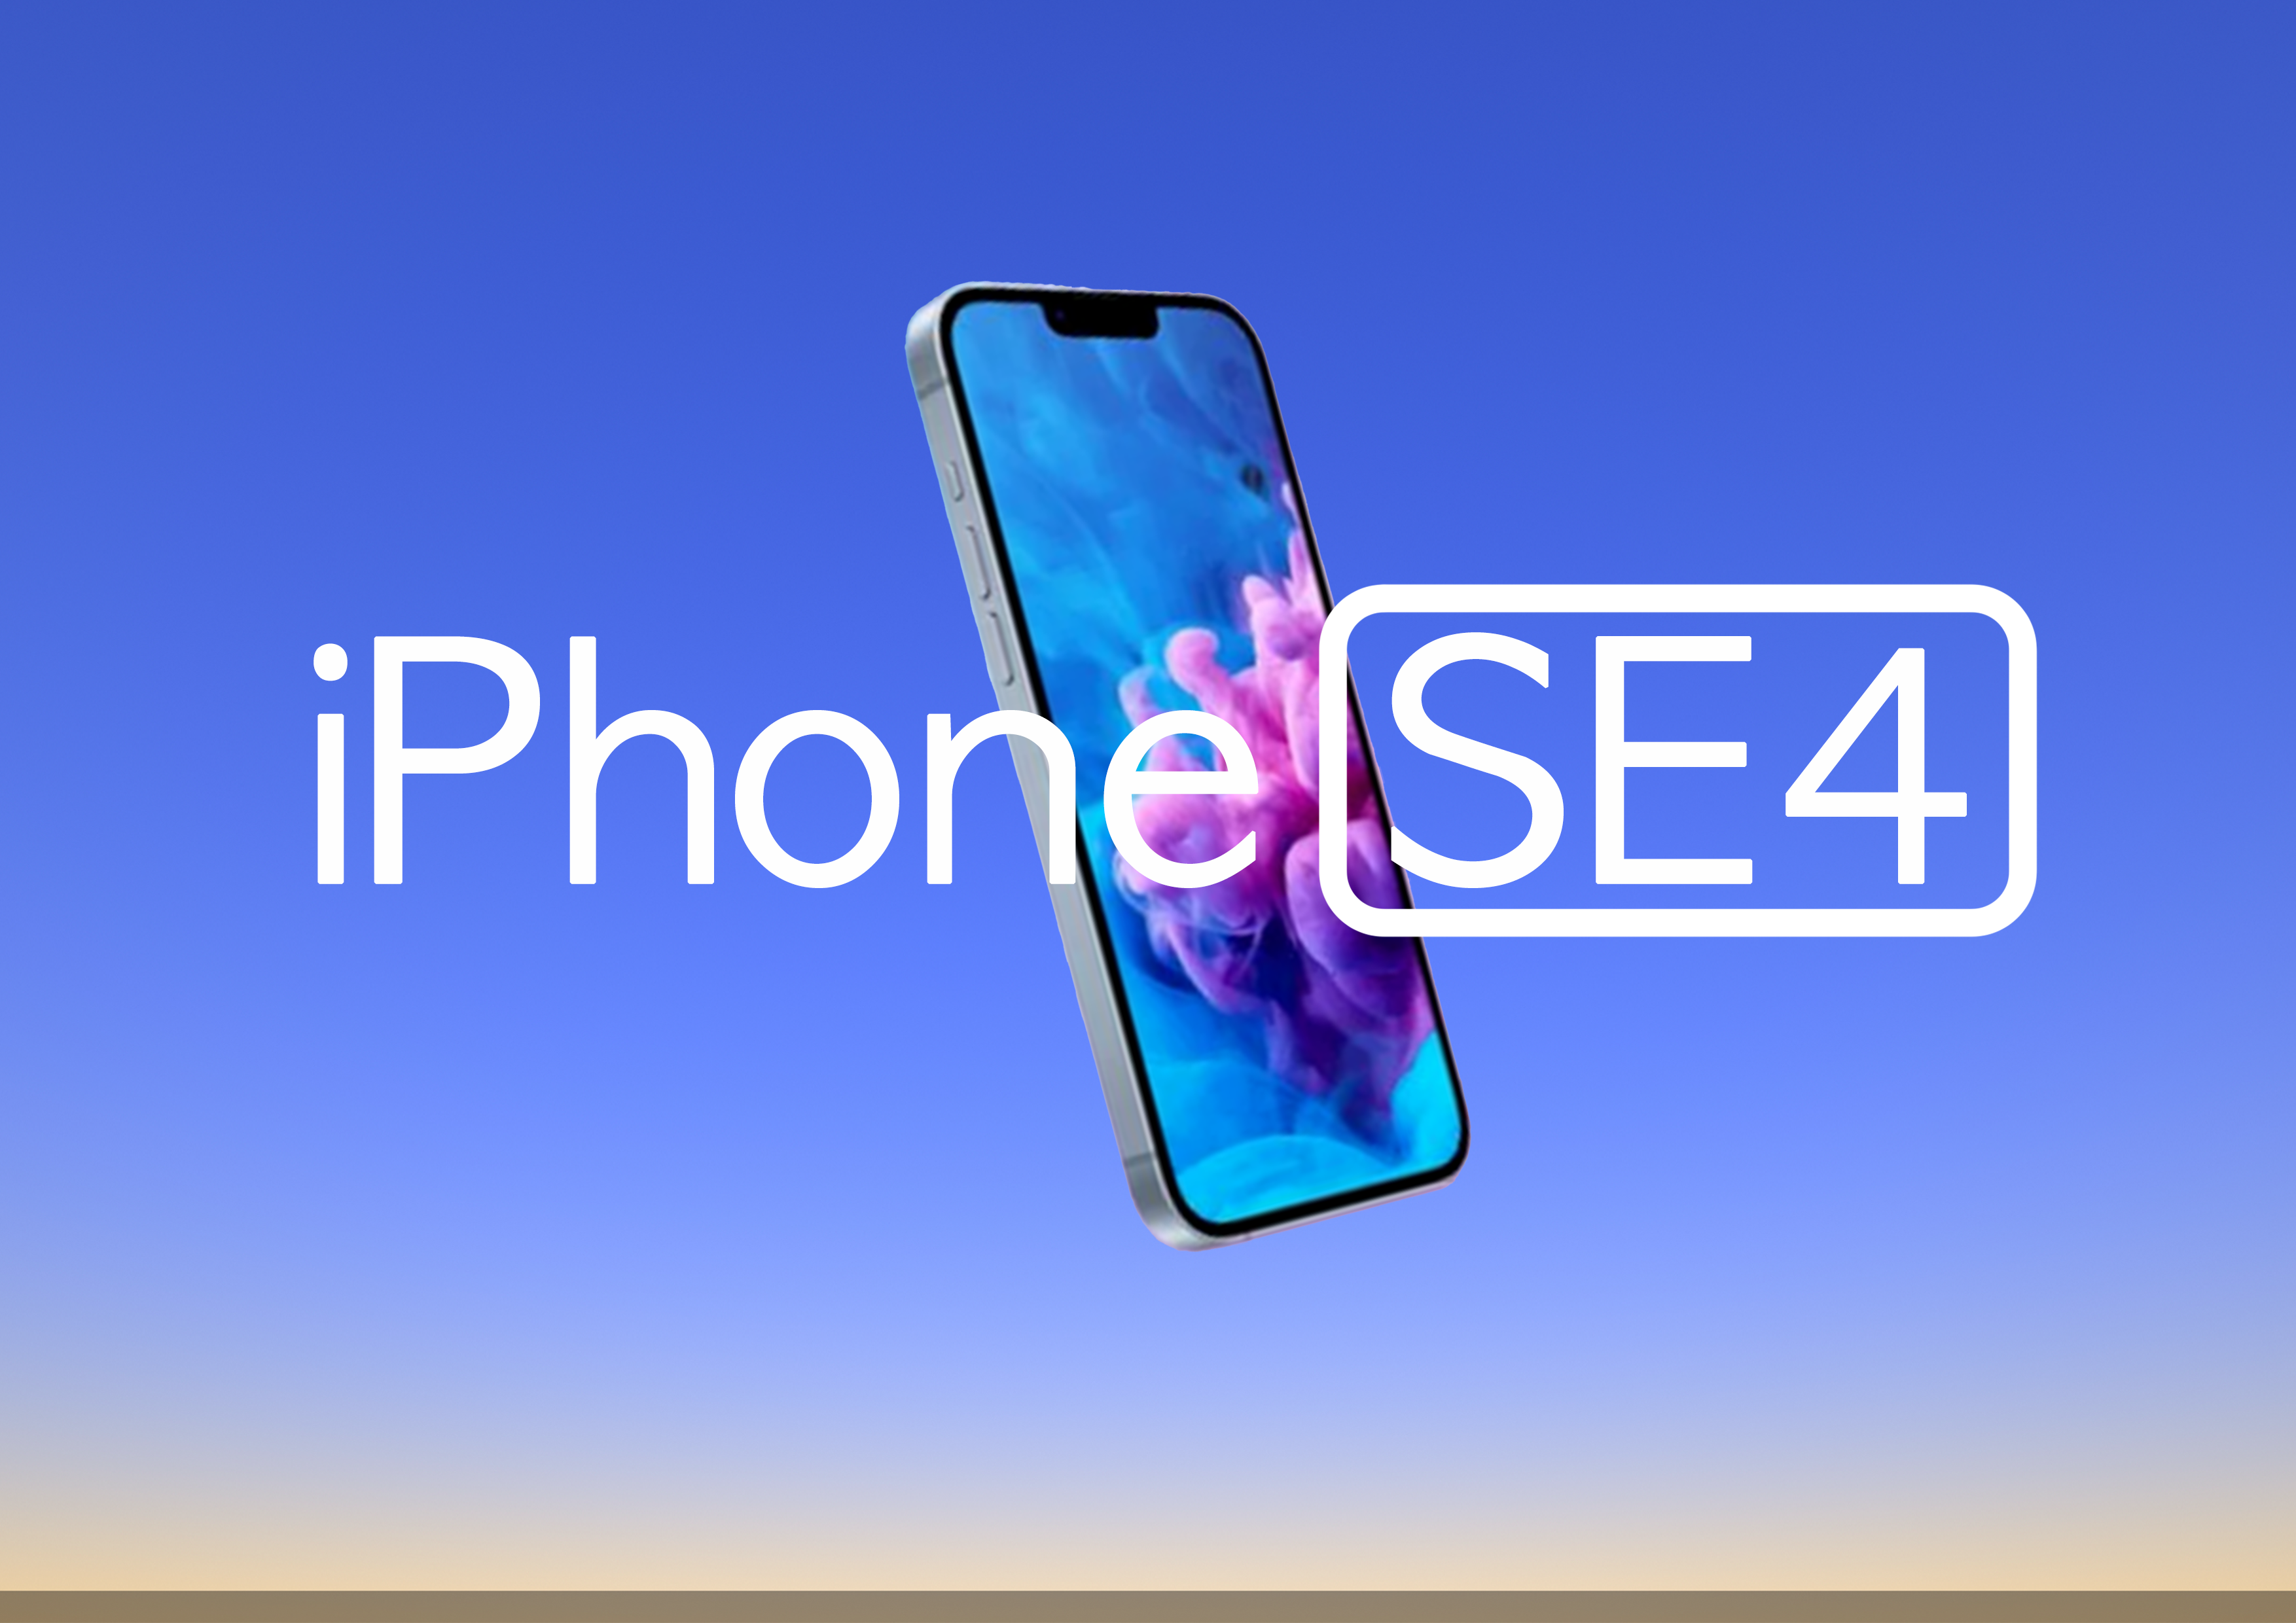 아이폰SE4 출시 예정일 및 가격